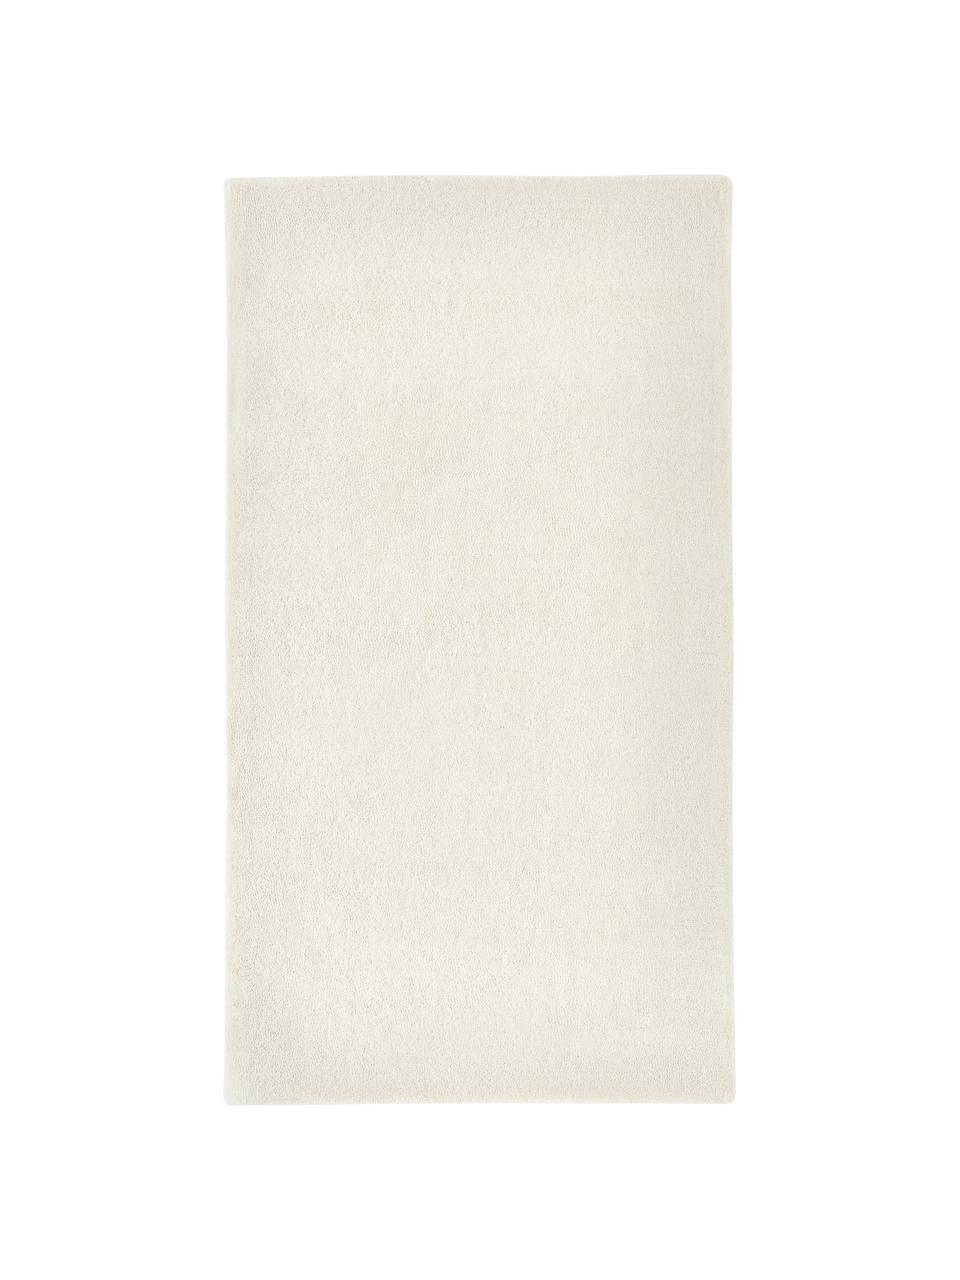 Tappeto in lana a pelo corto taftato a mano Jadie, Retro: 70% cotone, 30% poliester, Bianco crema, Larg. 80 x Lung. 150 cm (taglia XS)